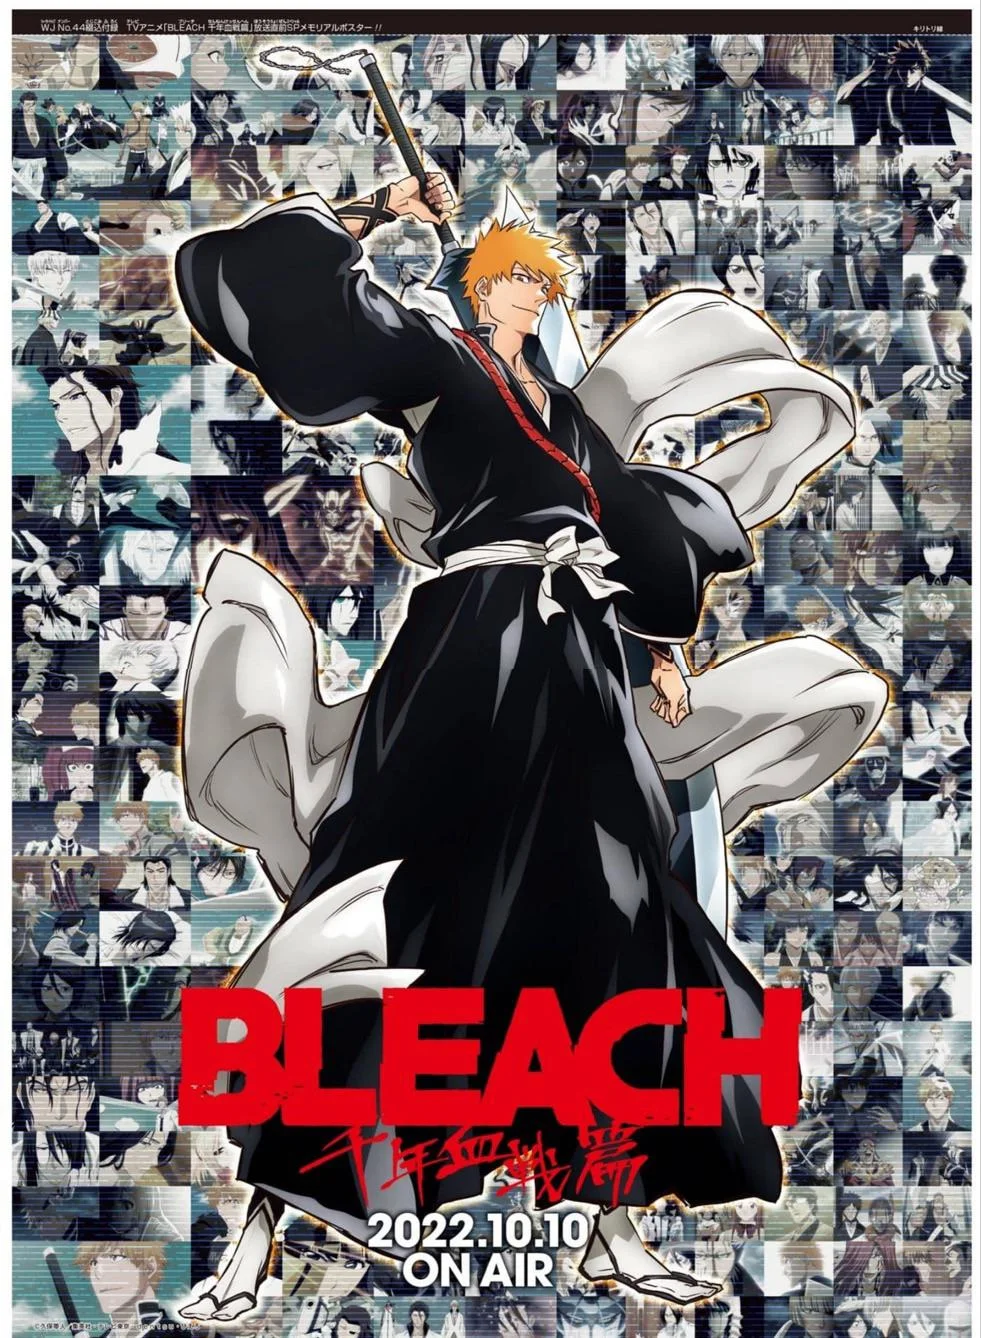 Bleach: Thousand-Year Blood War Sequel Anime Trailer Previews Return